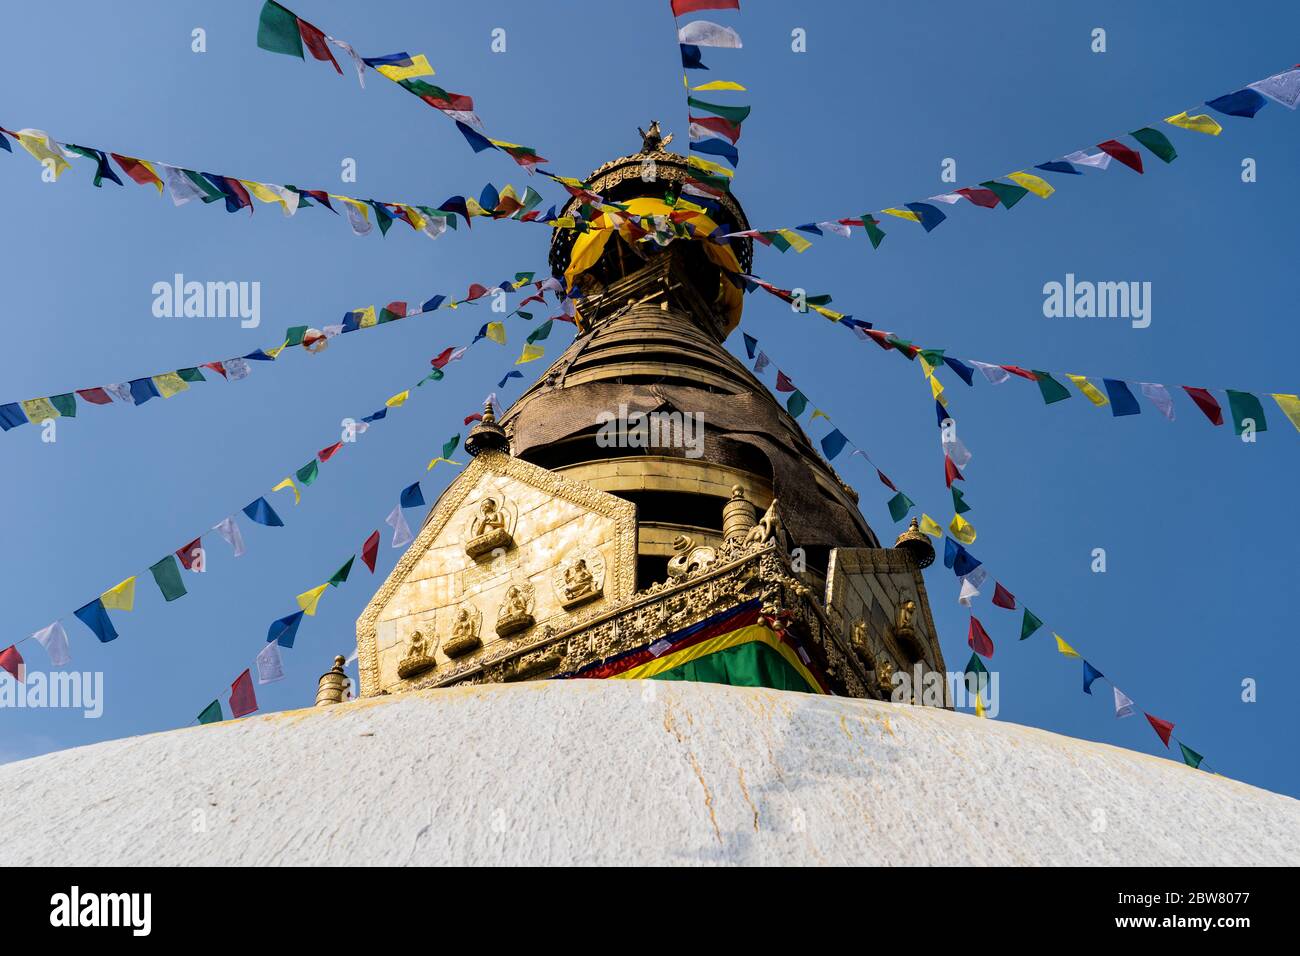 Swayambhu Stupa également connu sous le nom de Temple des singes, Katmandou, Népal, népalais, Asie, Asie, pays himalayen, Himalaya. Banque D'Images